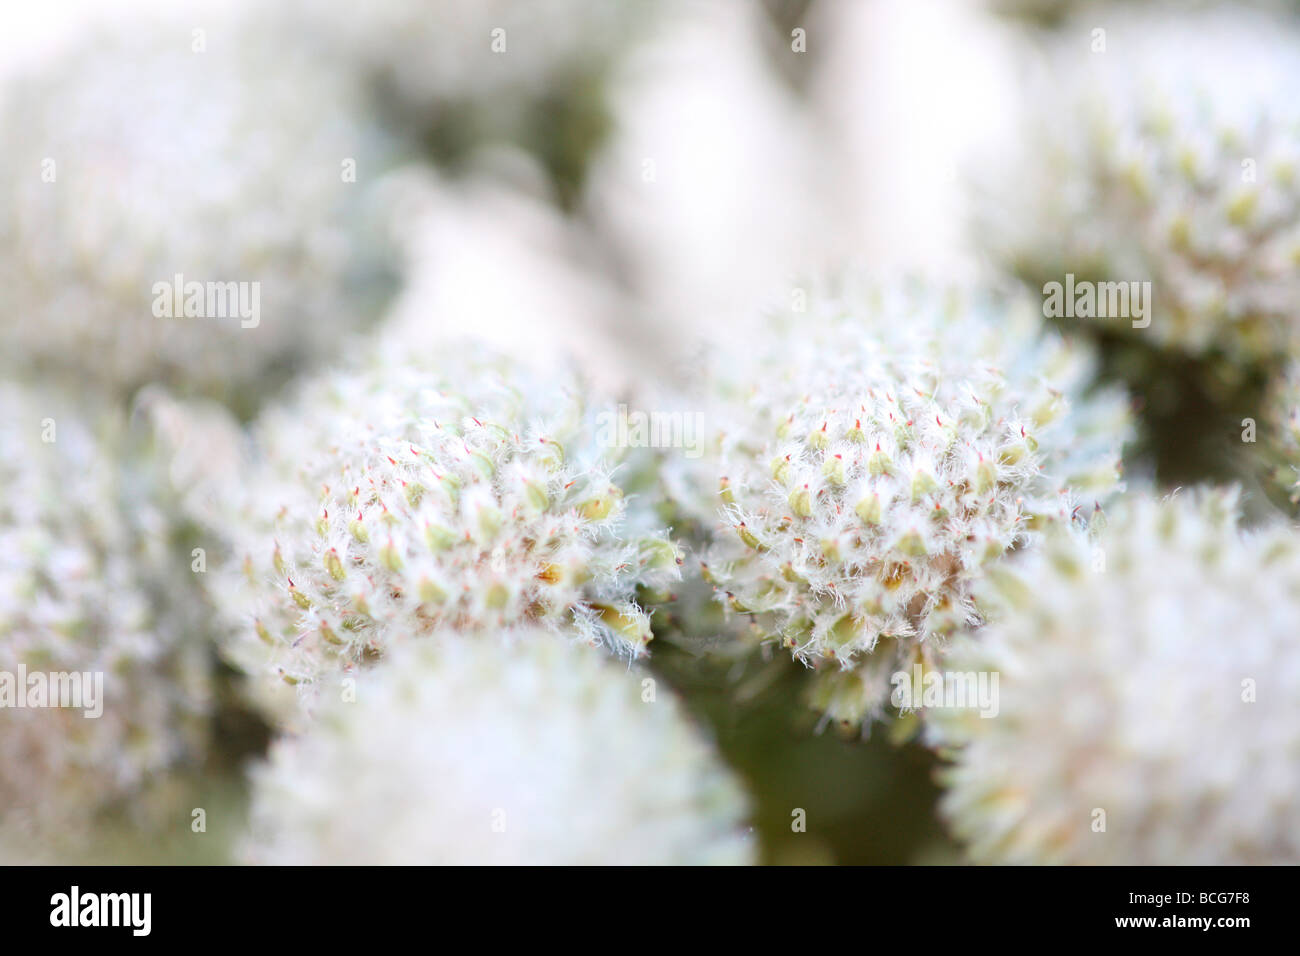 schöne full-Frame-Bild von Brunia Blütenköpfchen Kunstfotografie Jane Ann Butler Fotografie JABP425 Stockfoto